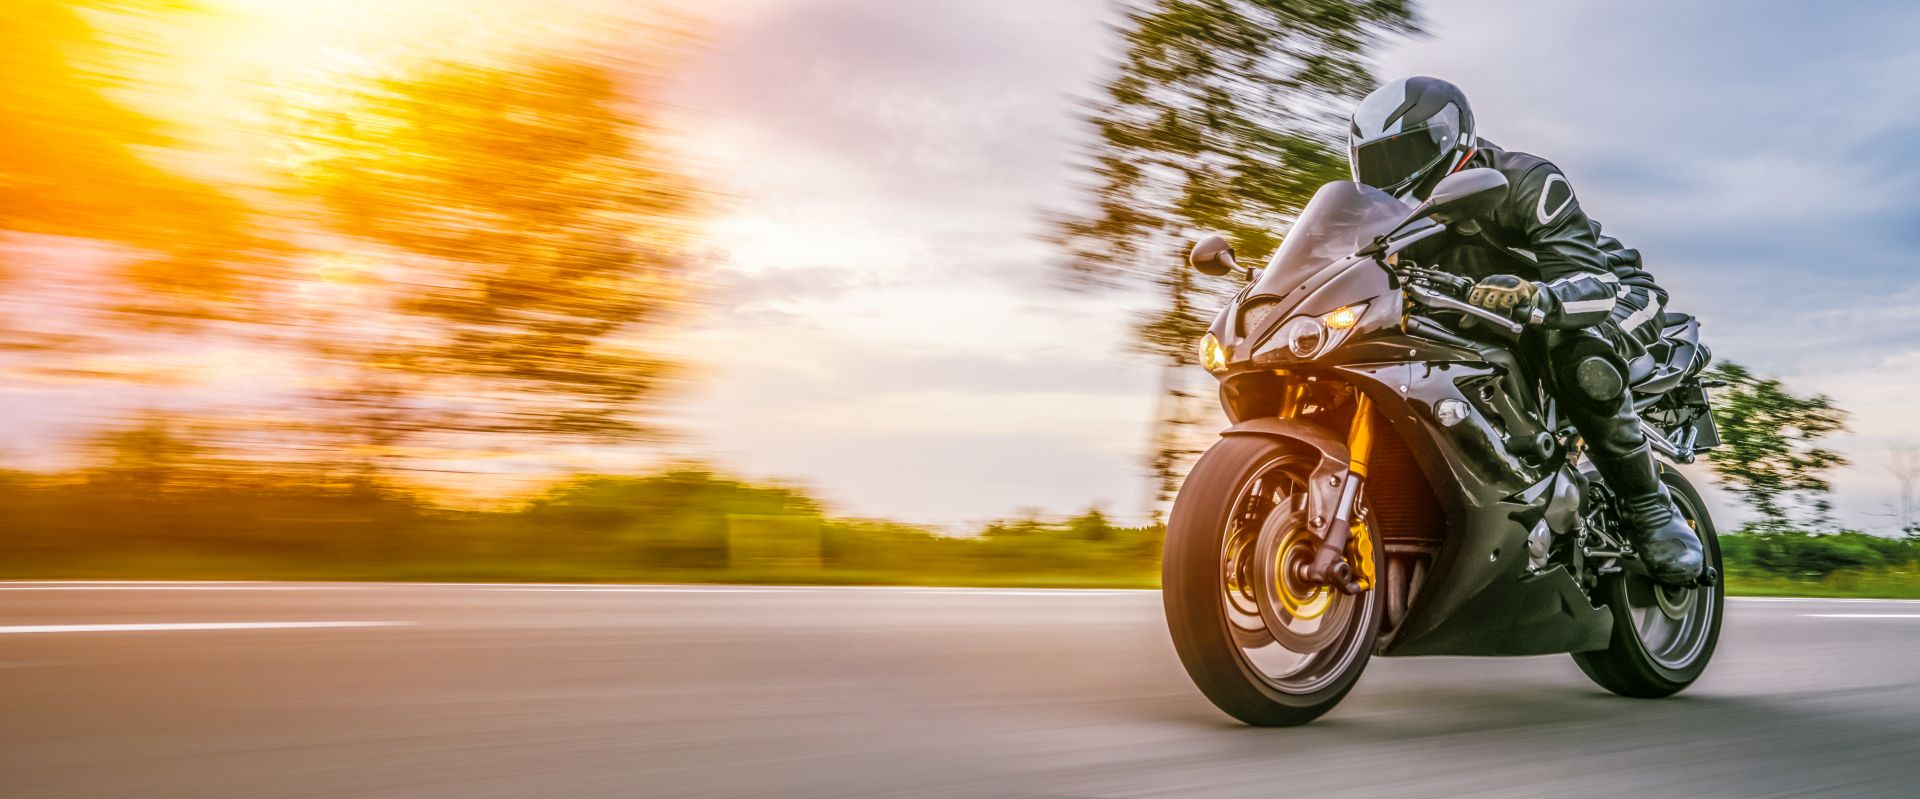 Co powinna uwzględniać umowa kupna sprzedaży motocykla?